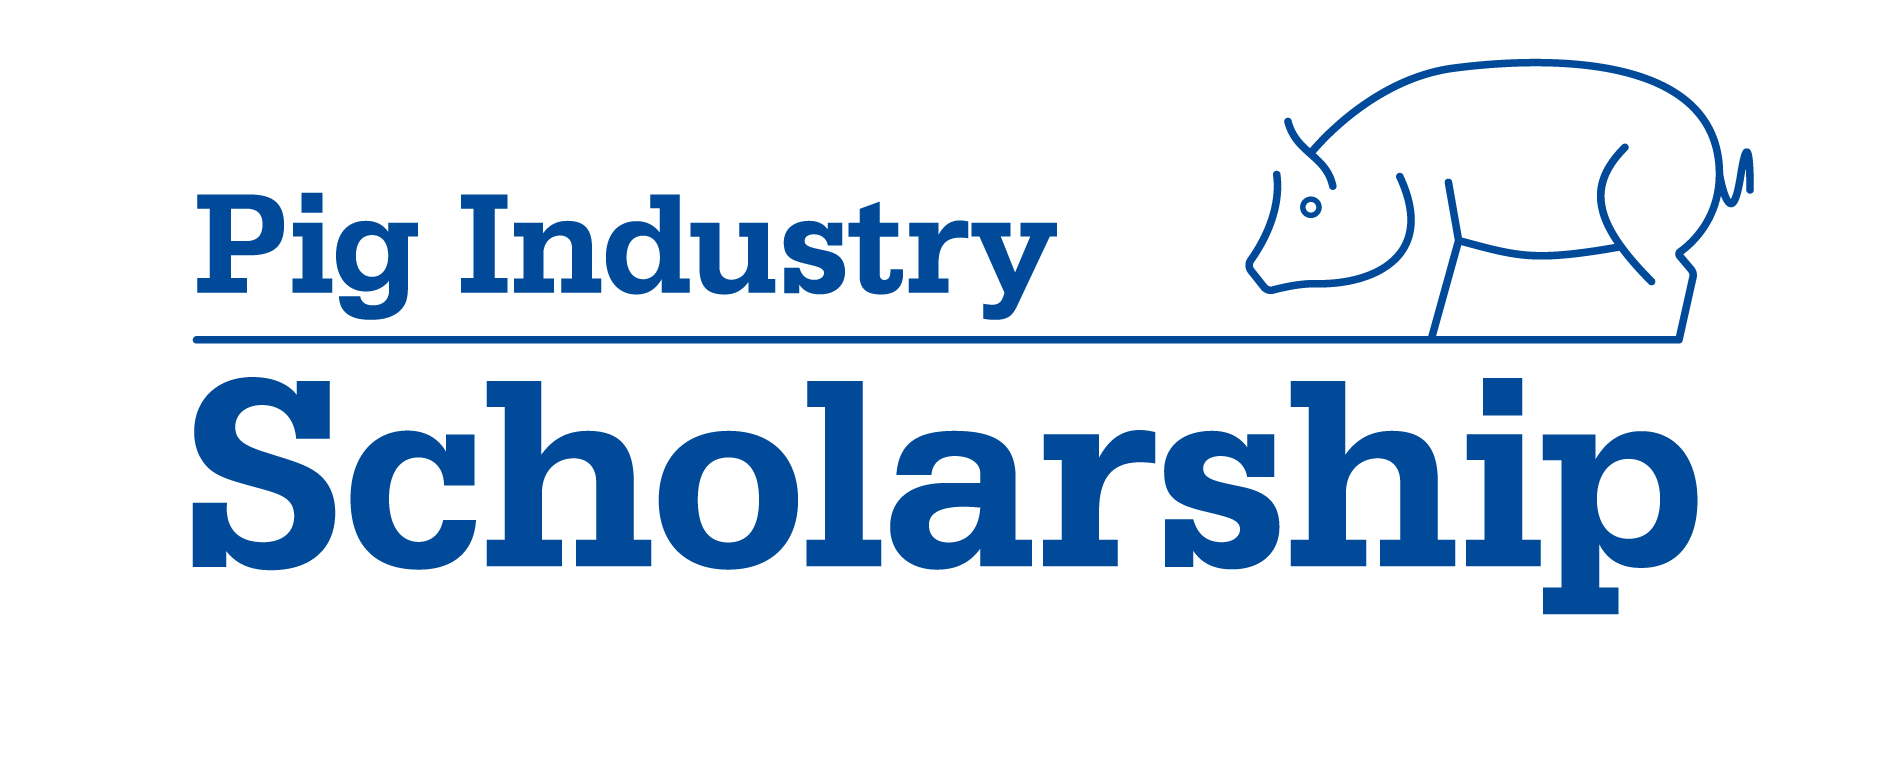 Pig Industry Scholarship logo - AHDB